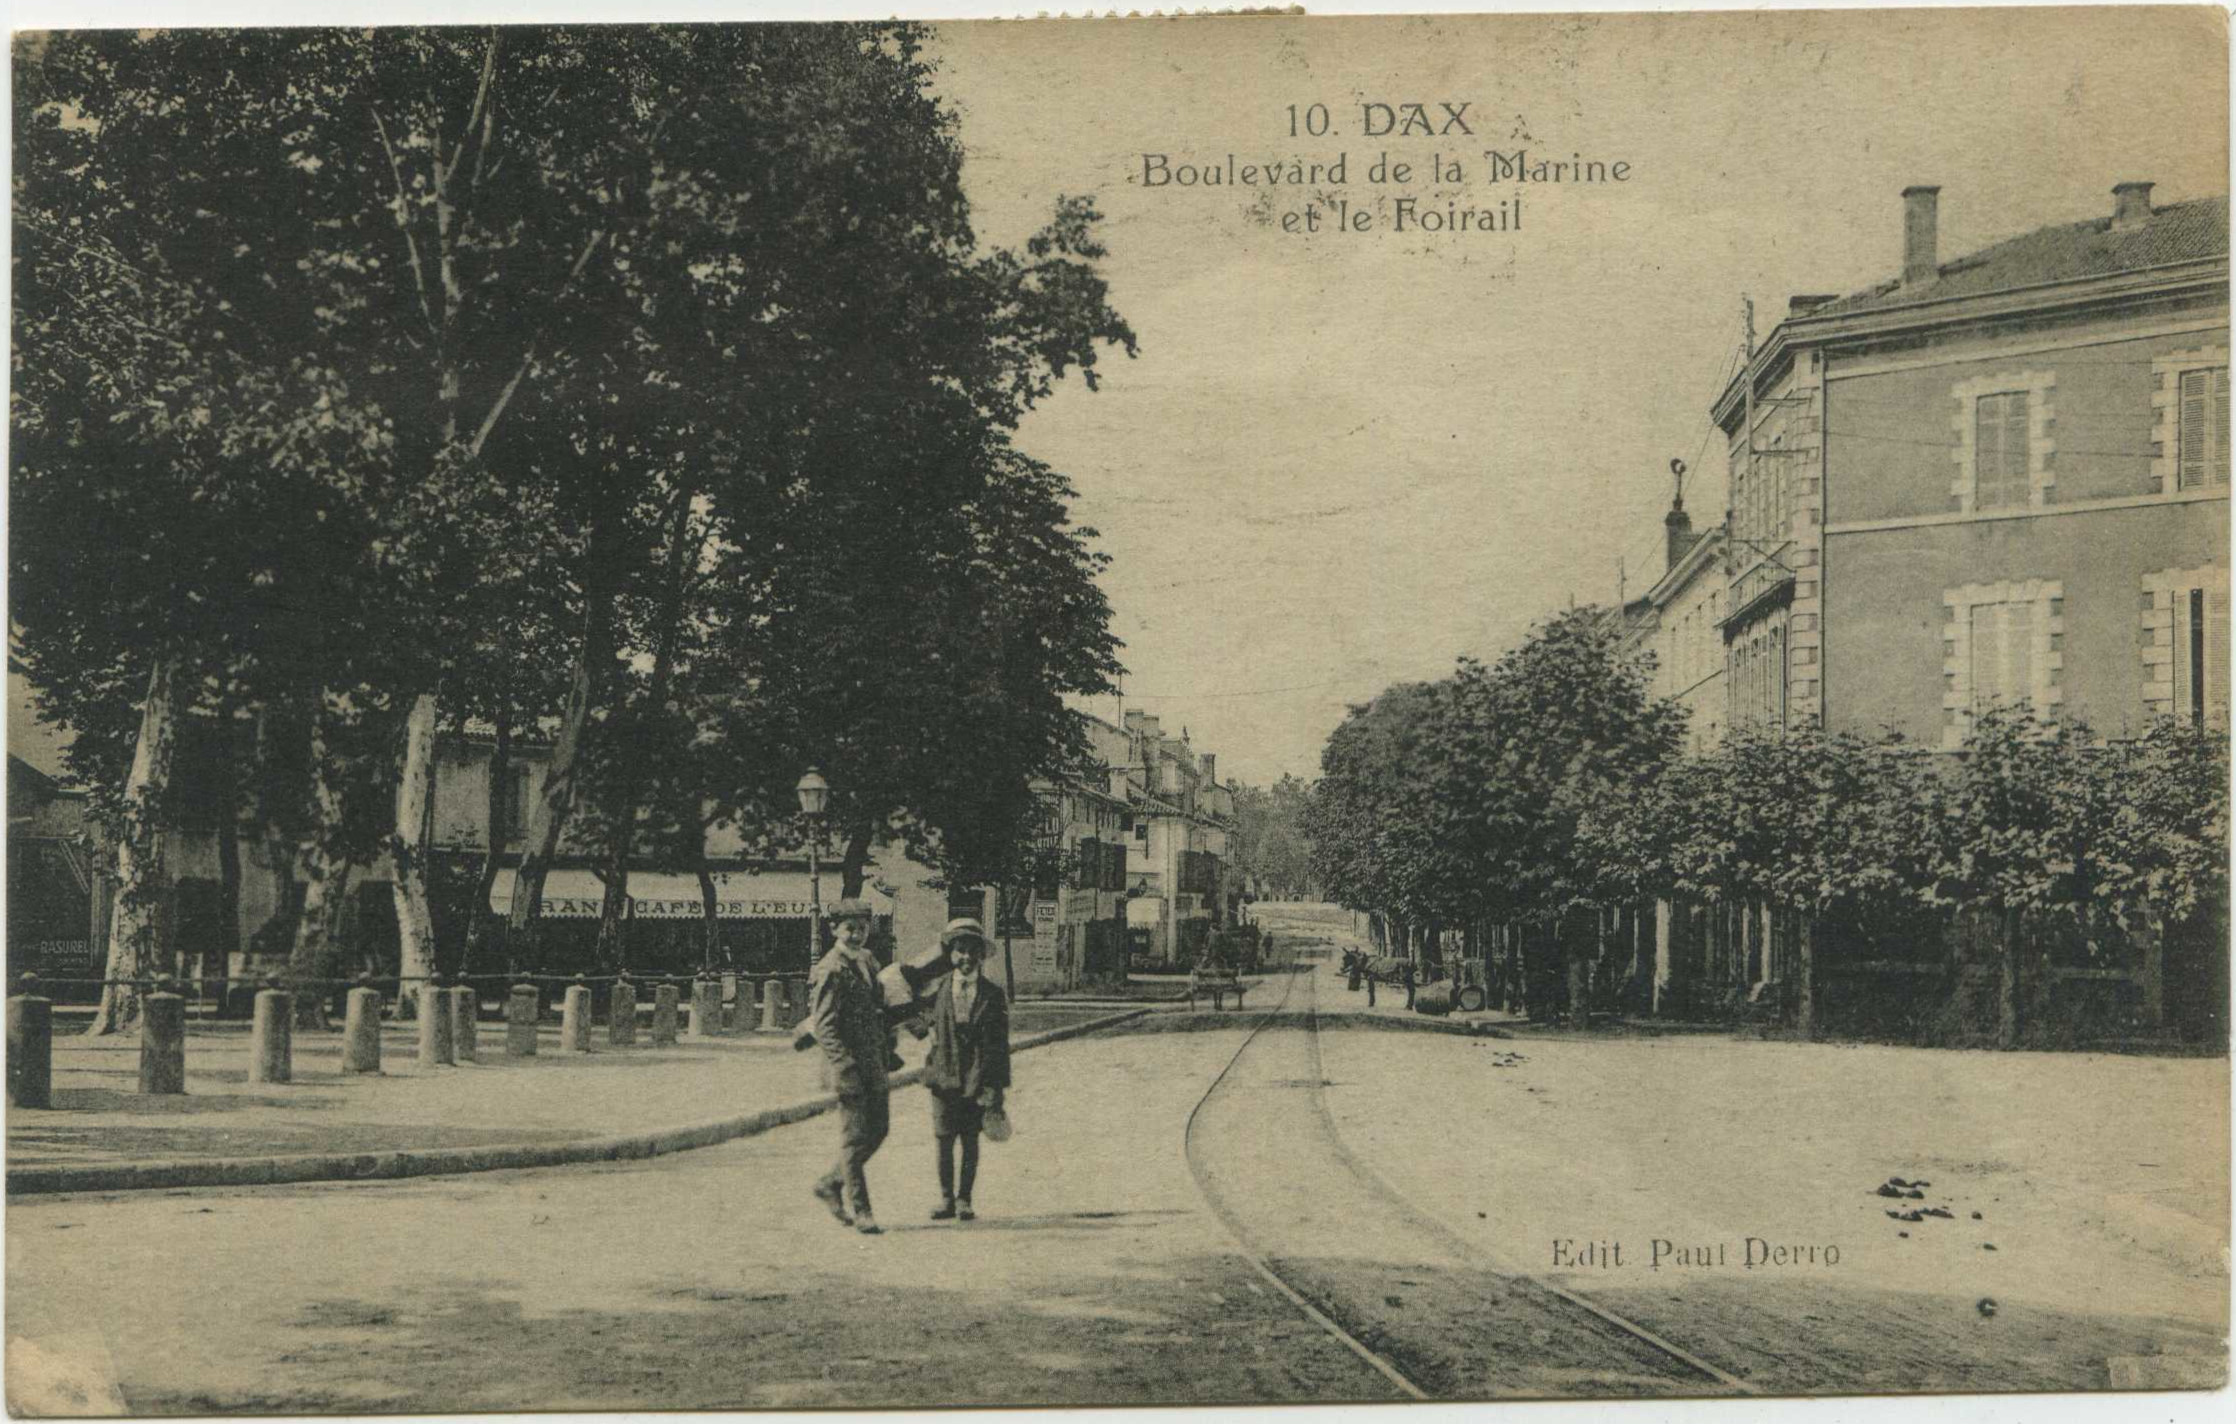 Dax - Boulevard de la Marine et le Foirail